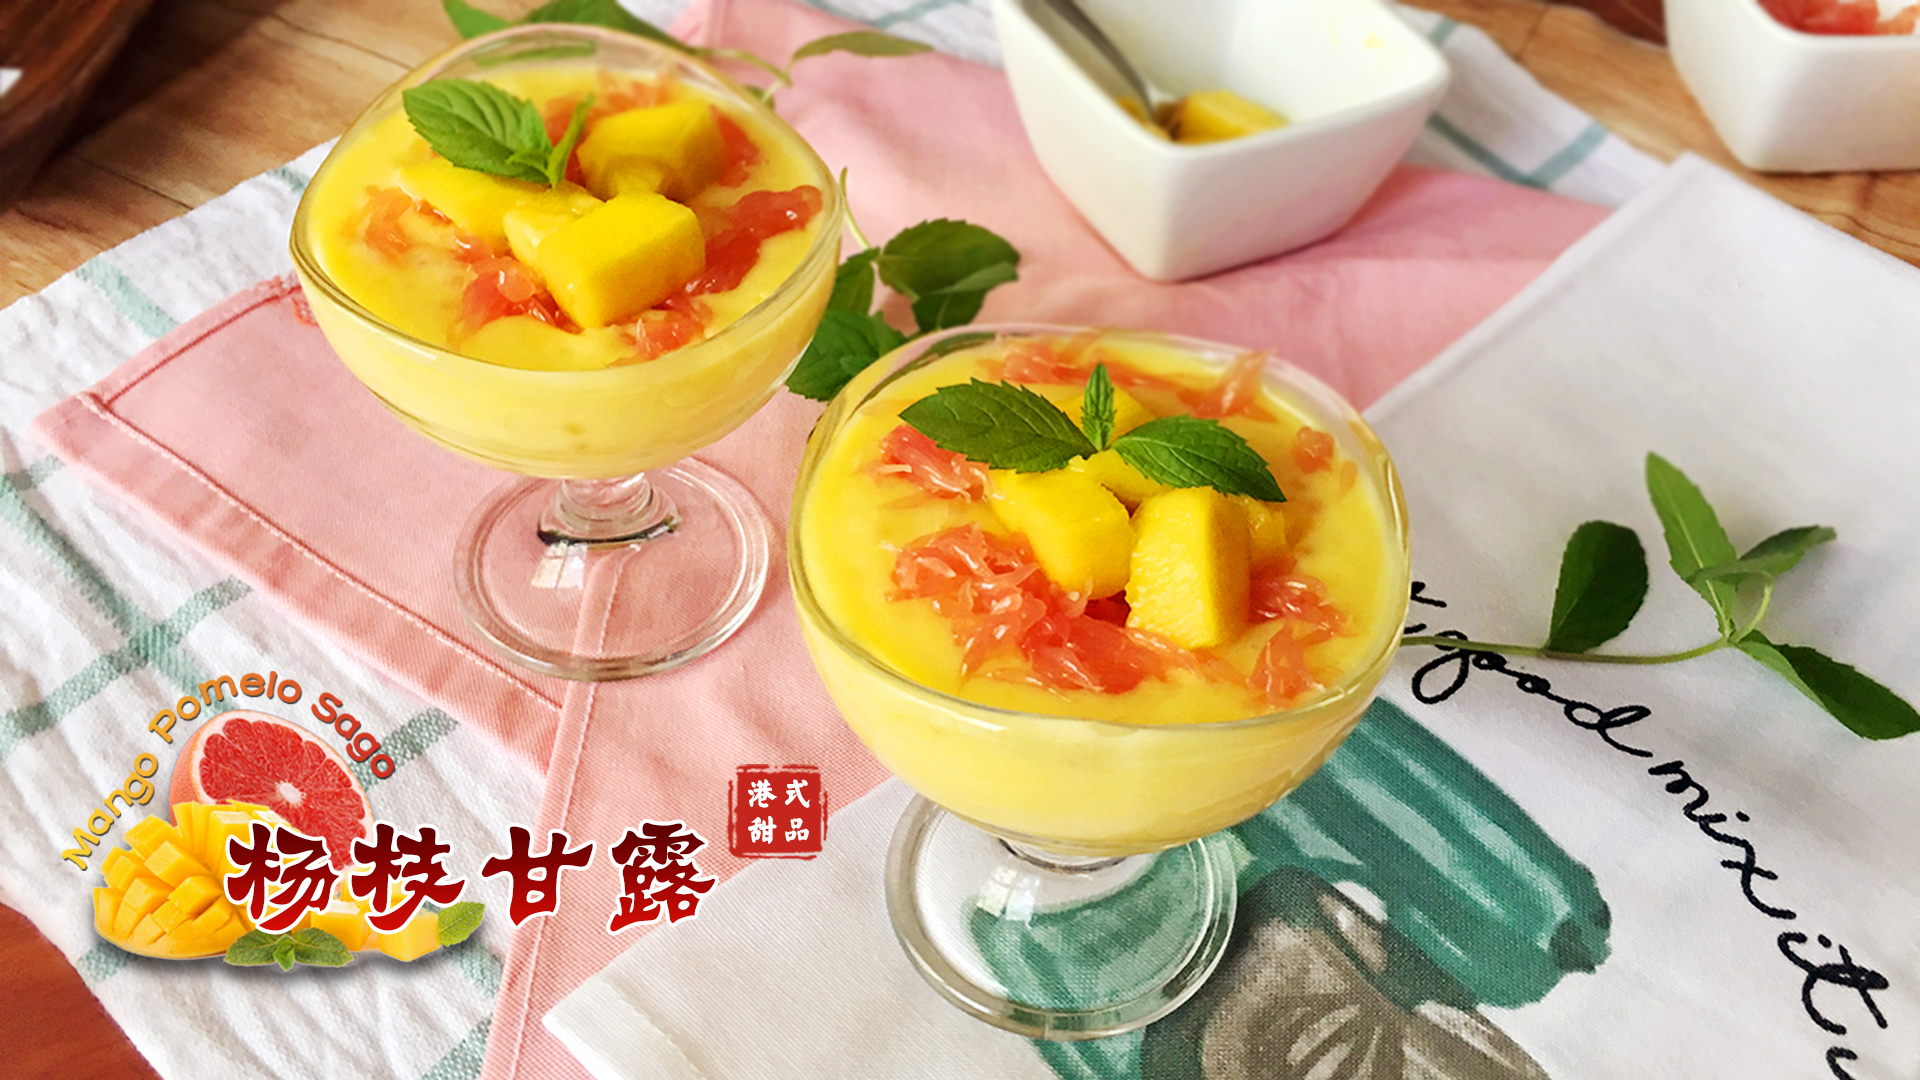 杨枝甘露 Mango pomelo sago 经典港式甜品 | 爱可思的小厨房